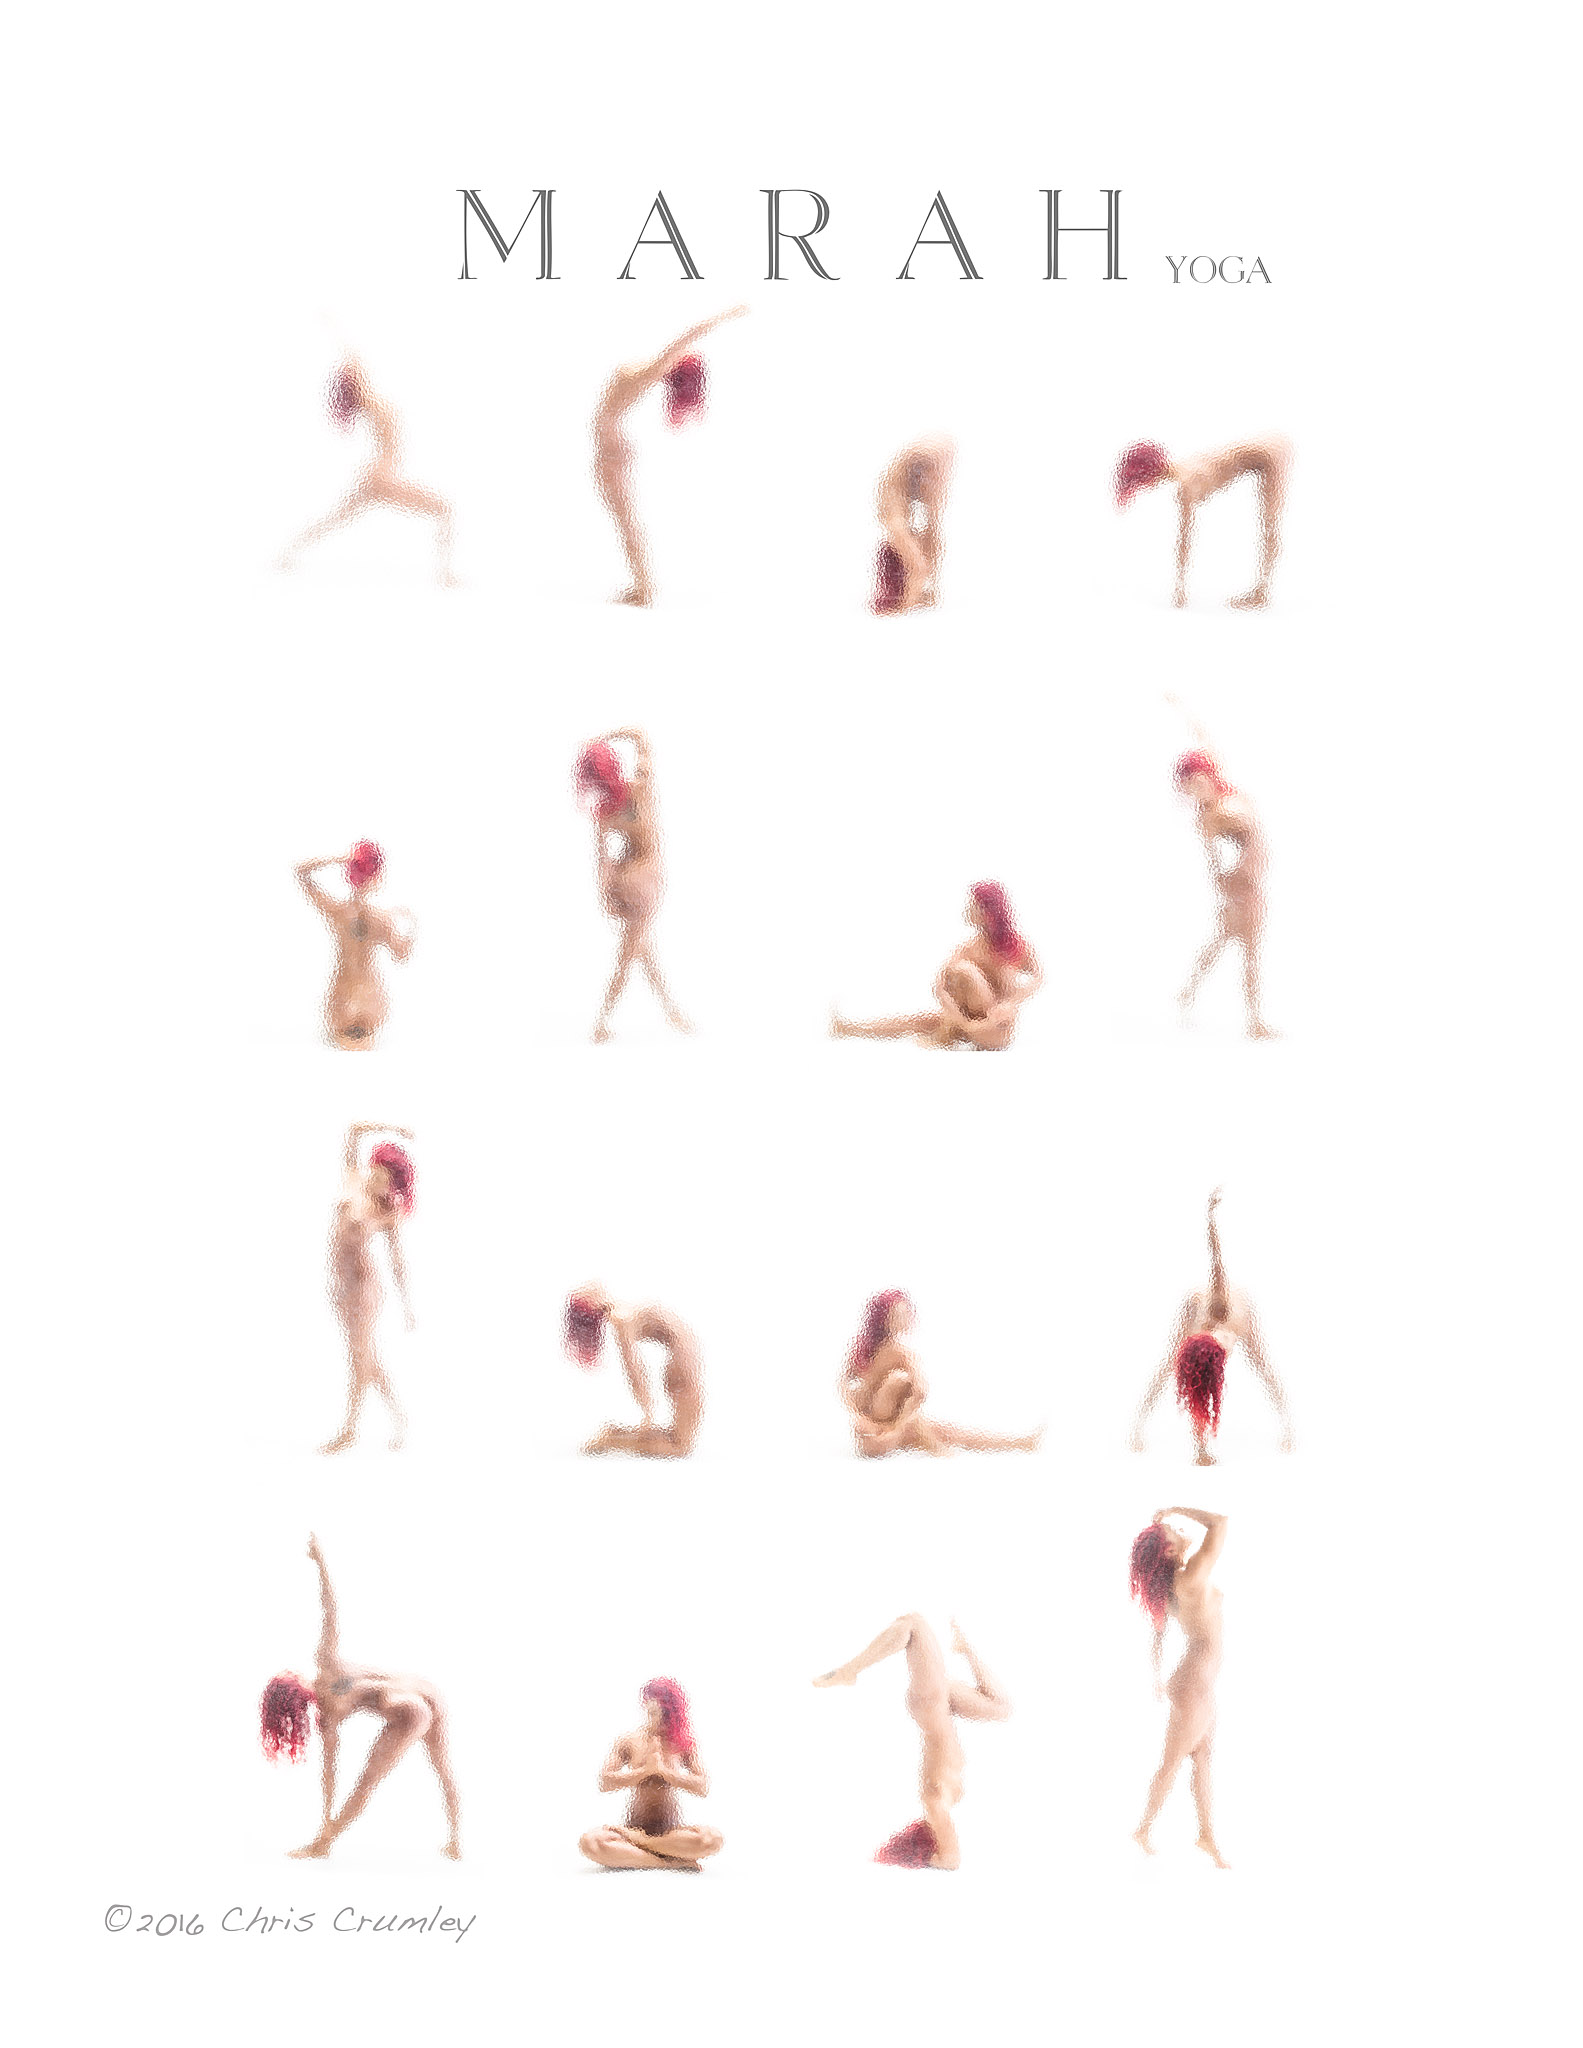 Marah Strickland Yoga Matrix